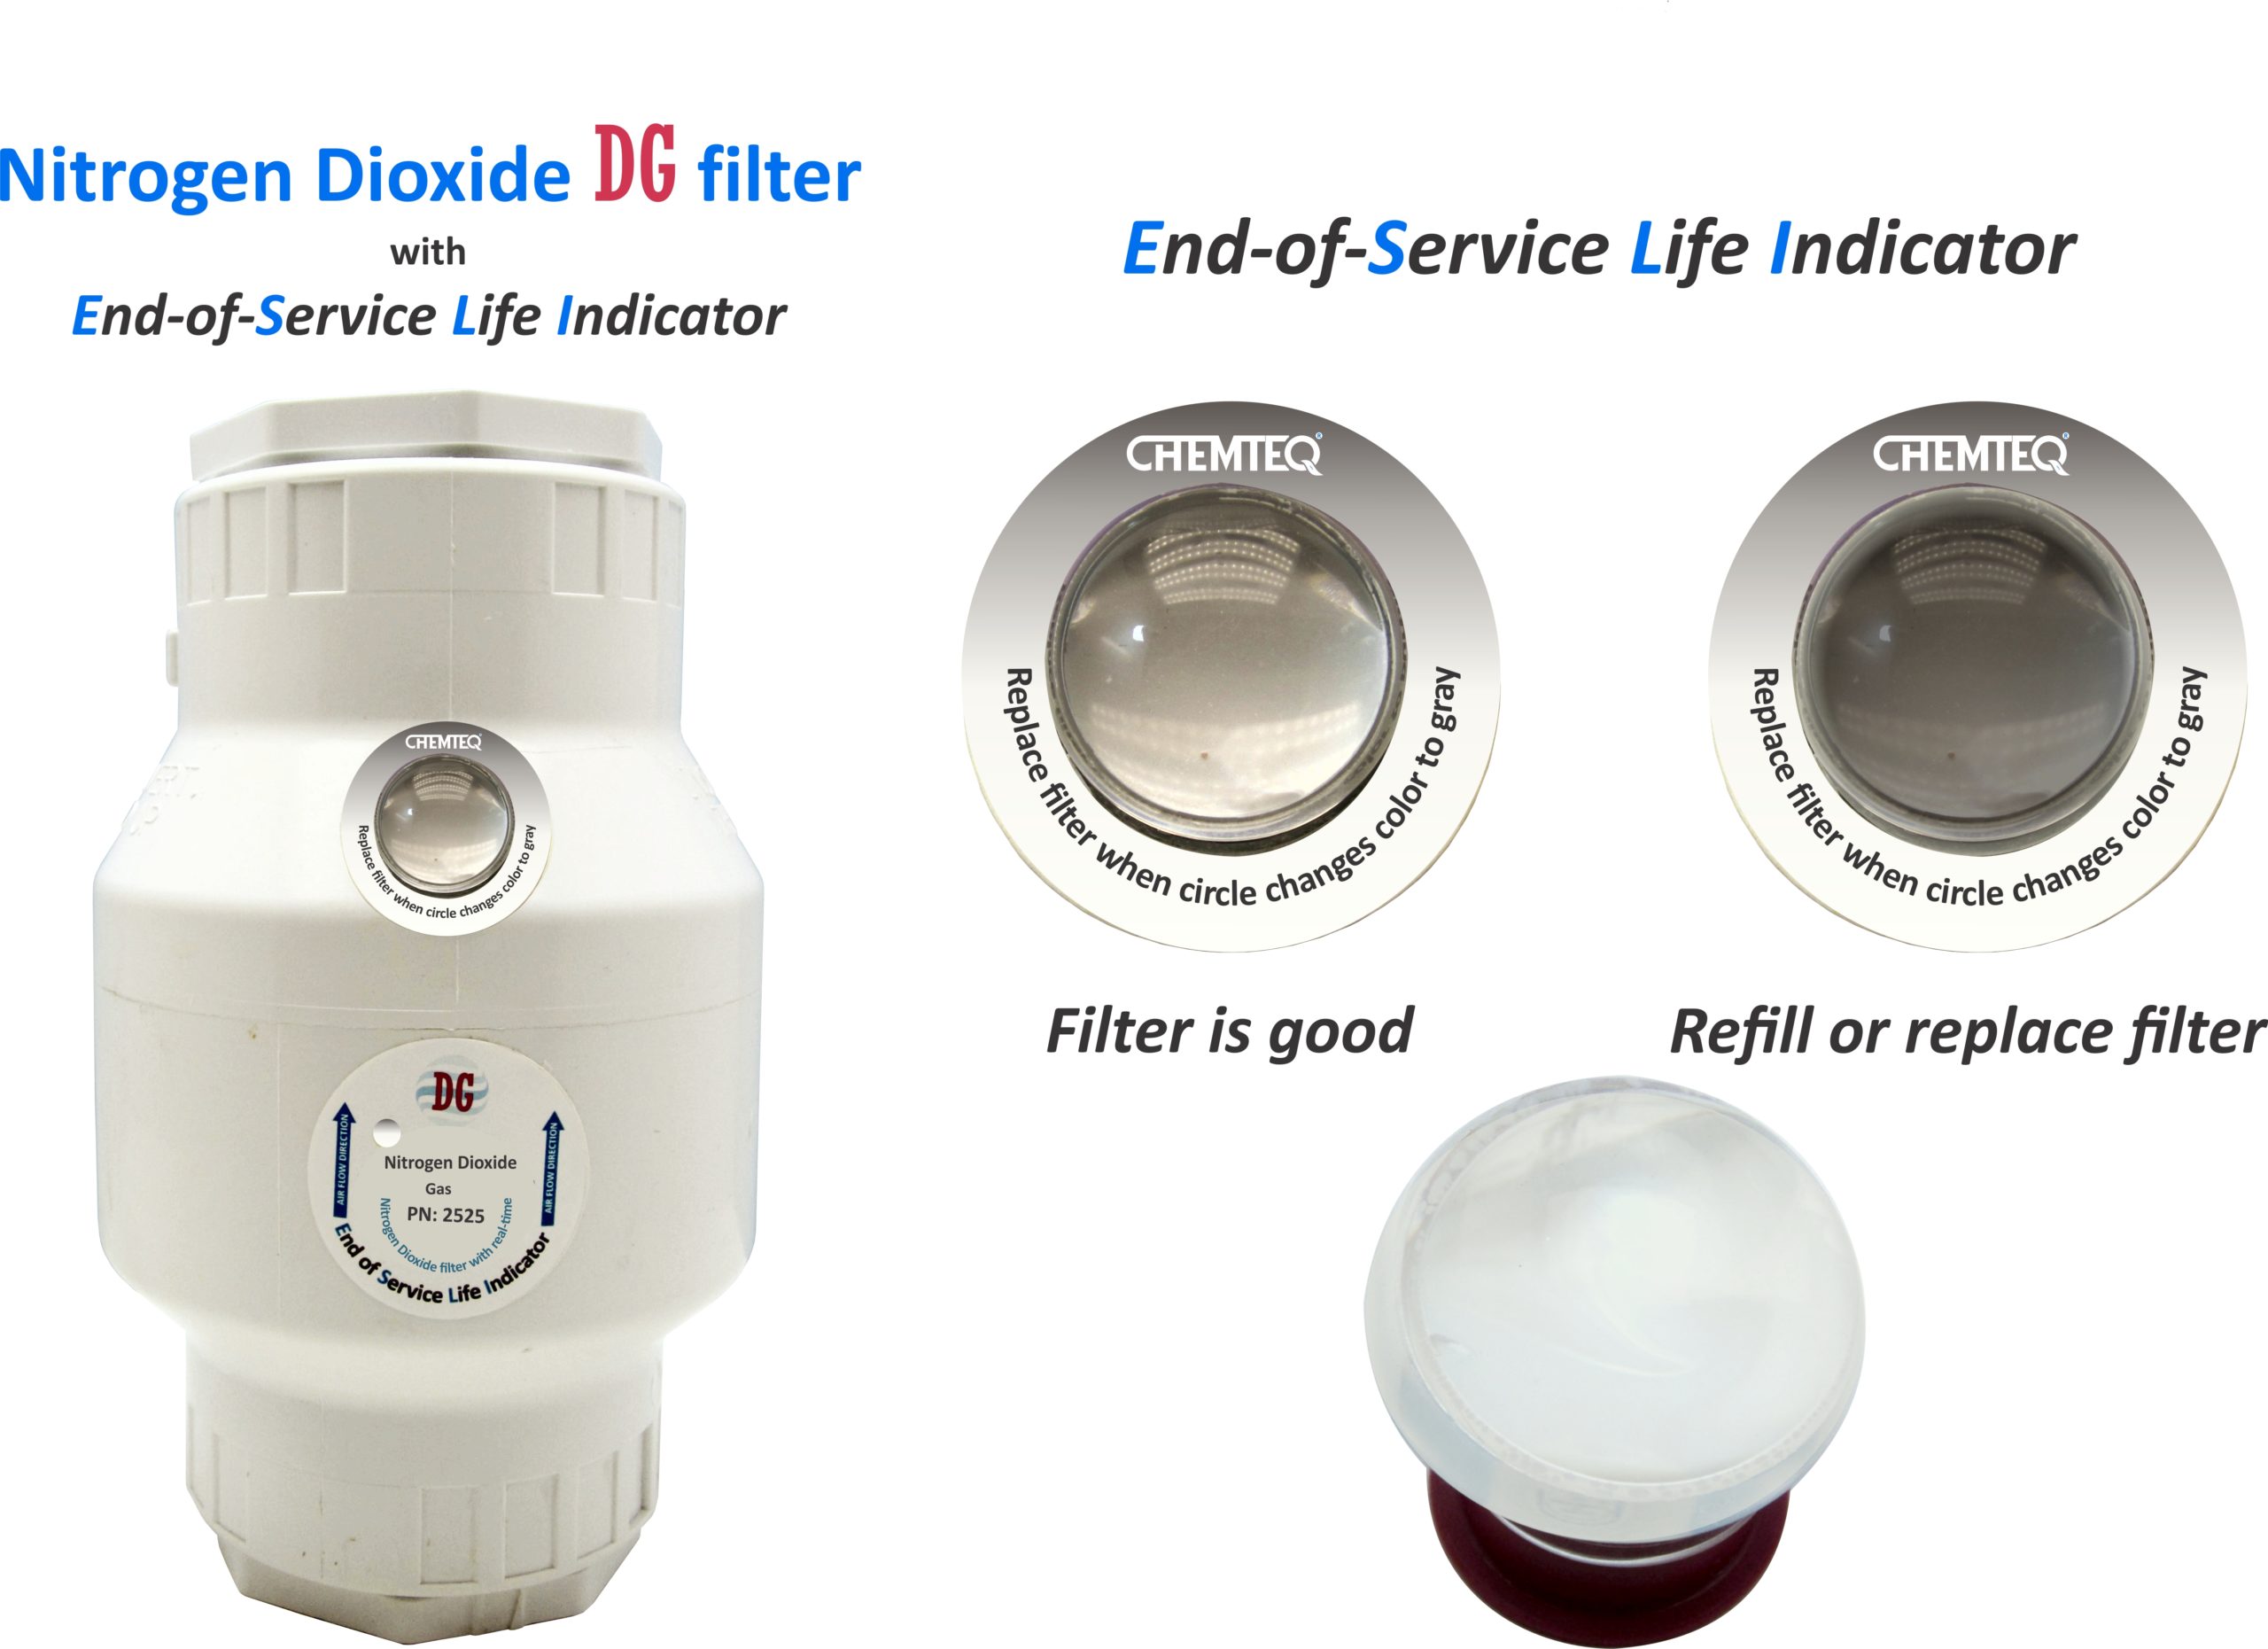 Nitrogen Dioxide DG Filter 2525 with end-of-service life indicator